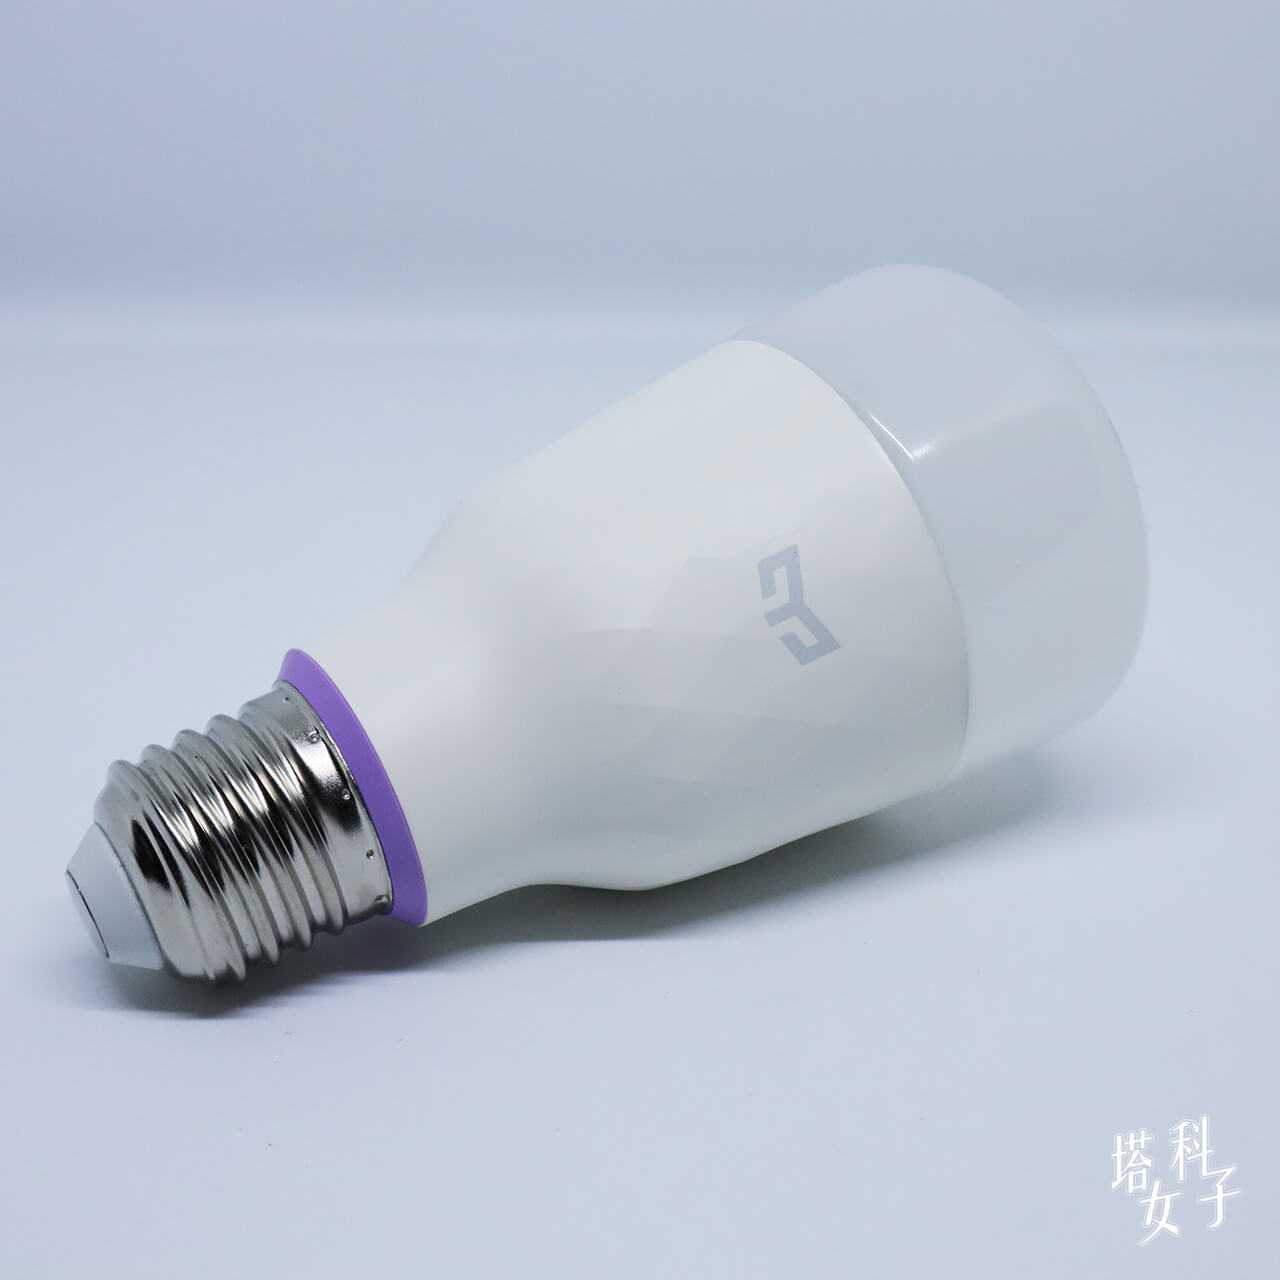 Yeelight LED 智慧燈泡彩光版開箱 - 內容物